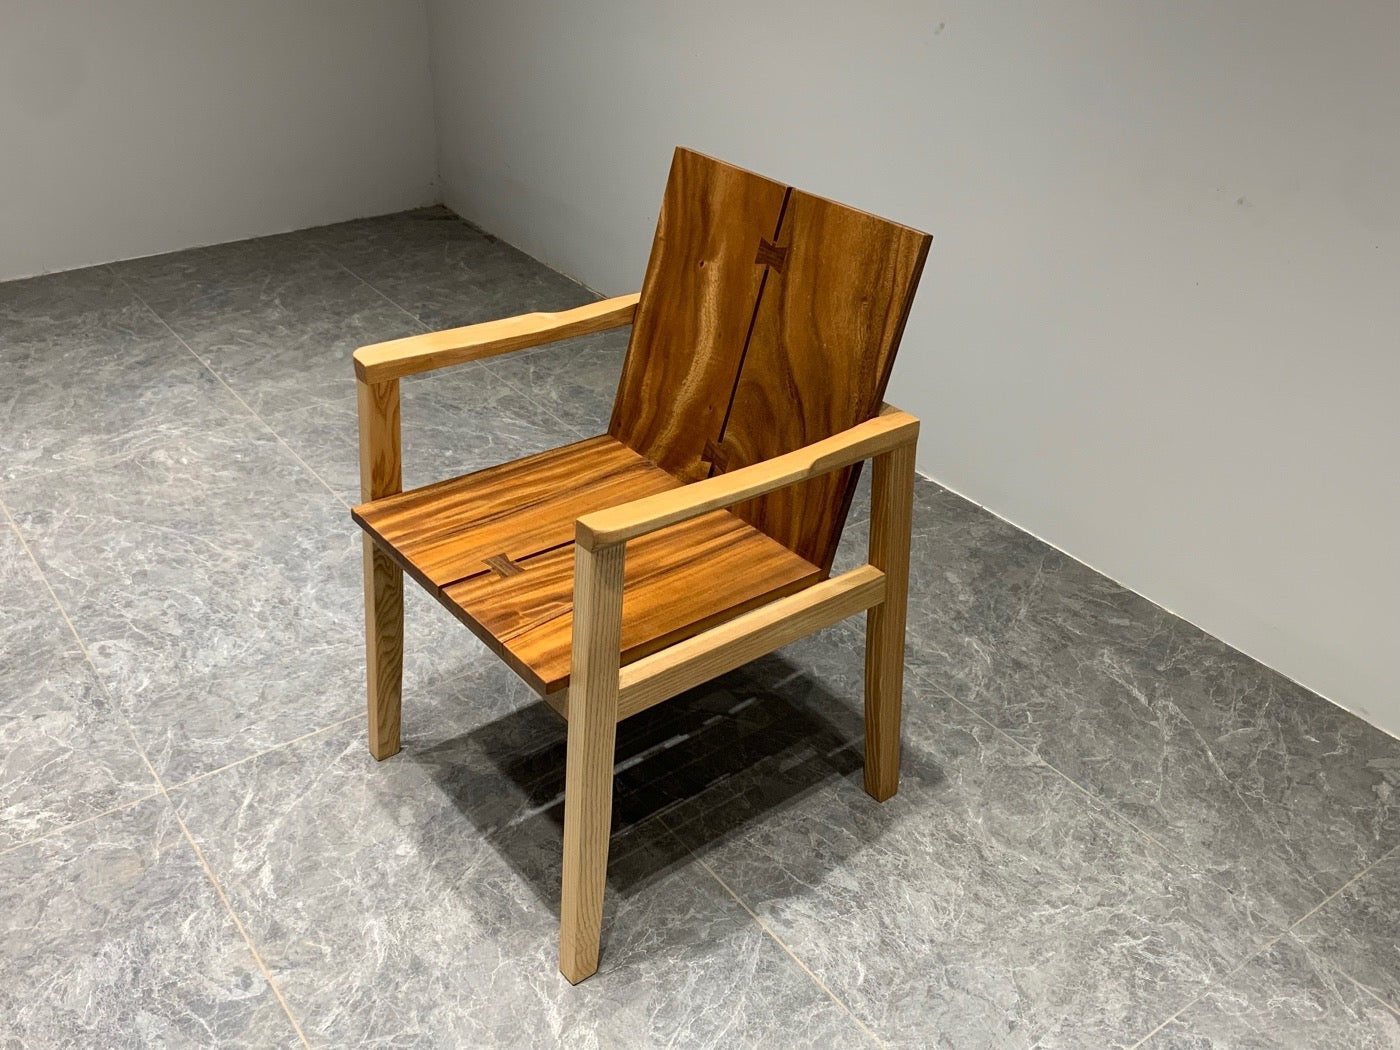 Sedia Michigan Adirondack, sedia in noce con schienale alto, sedia con schienale, sedia in legno